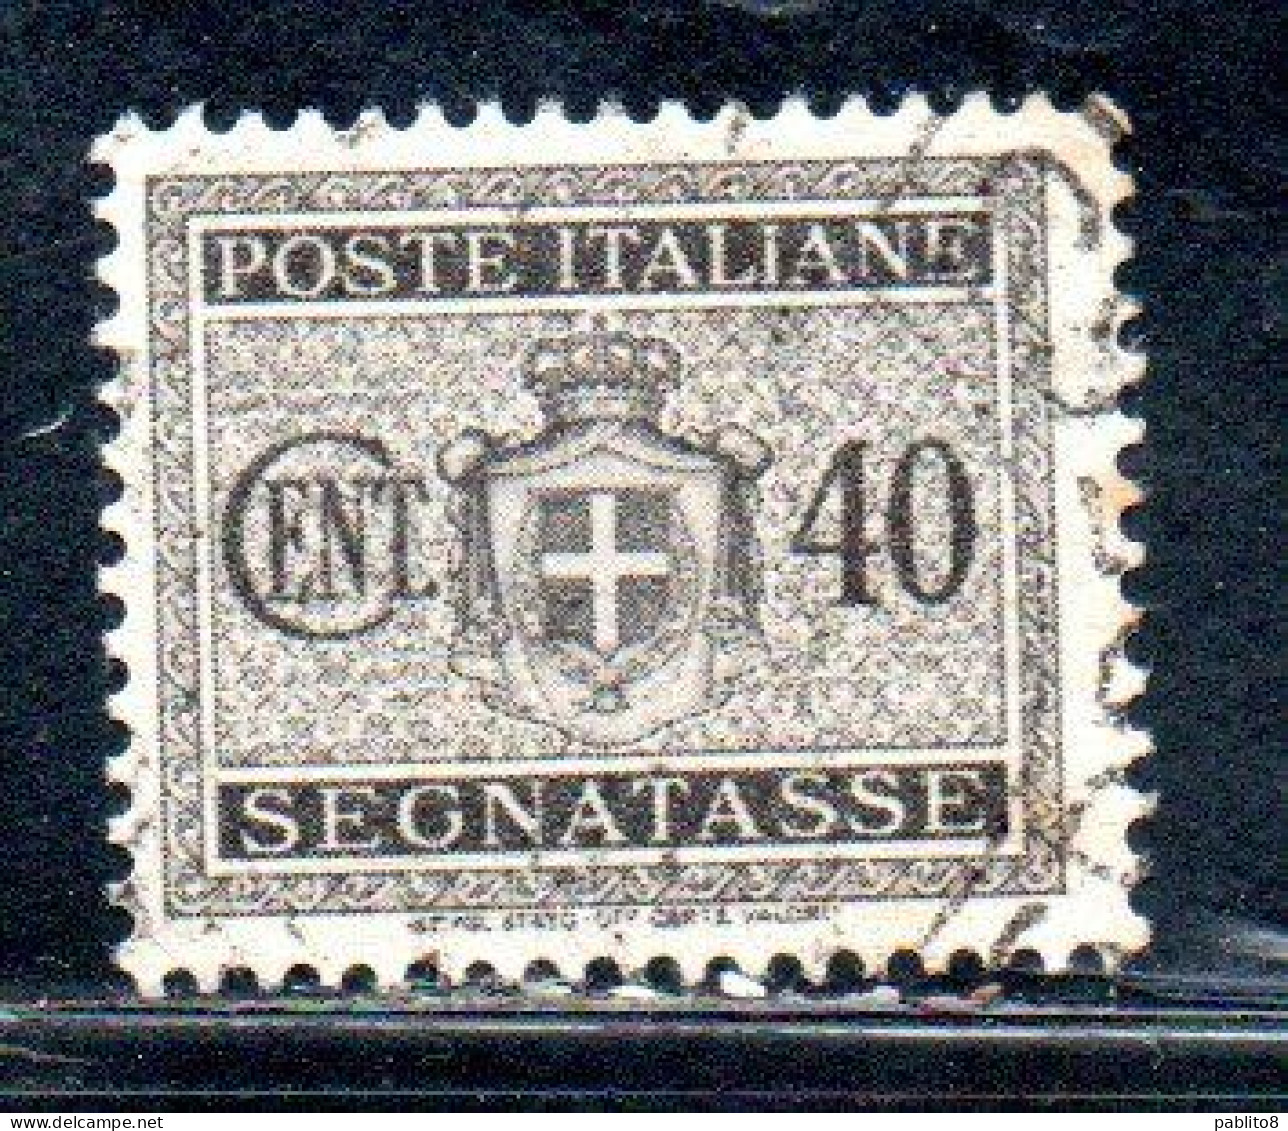 ITALY KINGDOM ITALIA REGNO LUOGOTENENZA 1945 TASSE DUE SEGNATASSE POSTAGE DUE RUOTA WHEEL CENT.40c USATO USED OBLITERE' - Impuestos